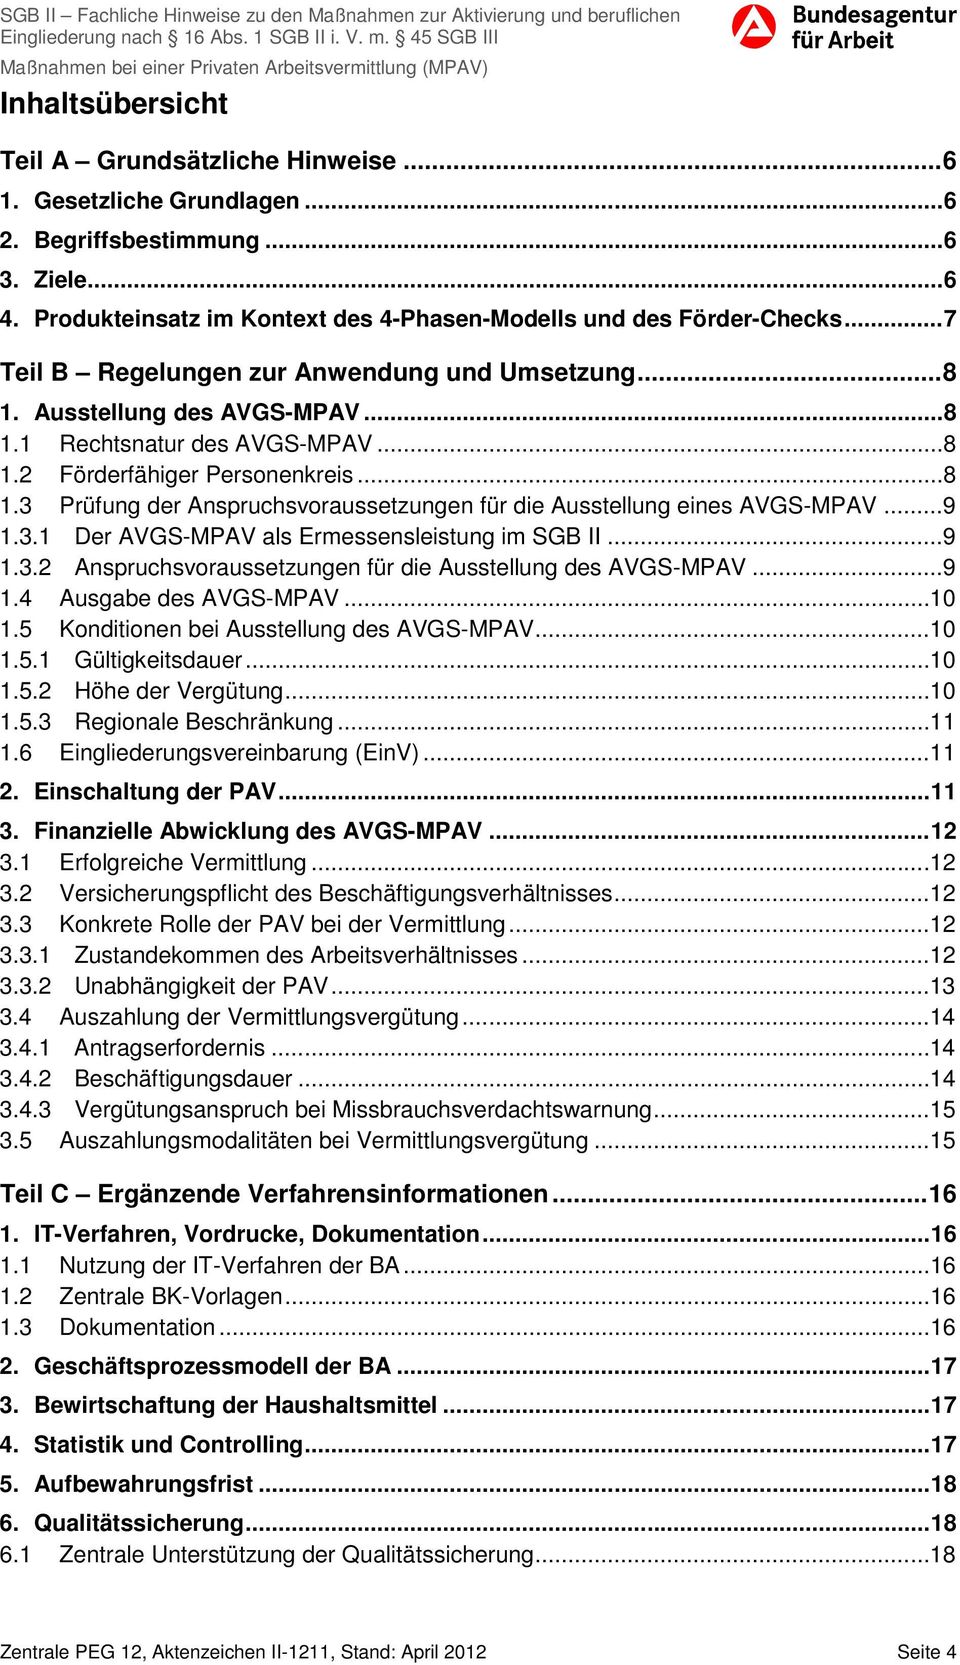 ..9 1.3.1 Der AVGS-MPAV als Ermessensleistung im SGB II...9 1.3.2 Anspruchsvoraussetzungen für die Ausstellung des AVGS-MPAV...9 1.4 Ausgabe des AVGS-MPAV... 10 1.